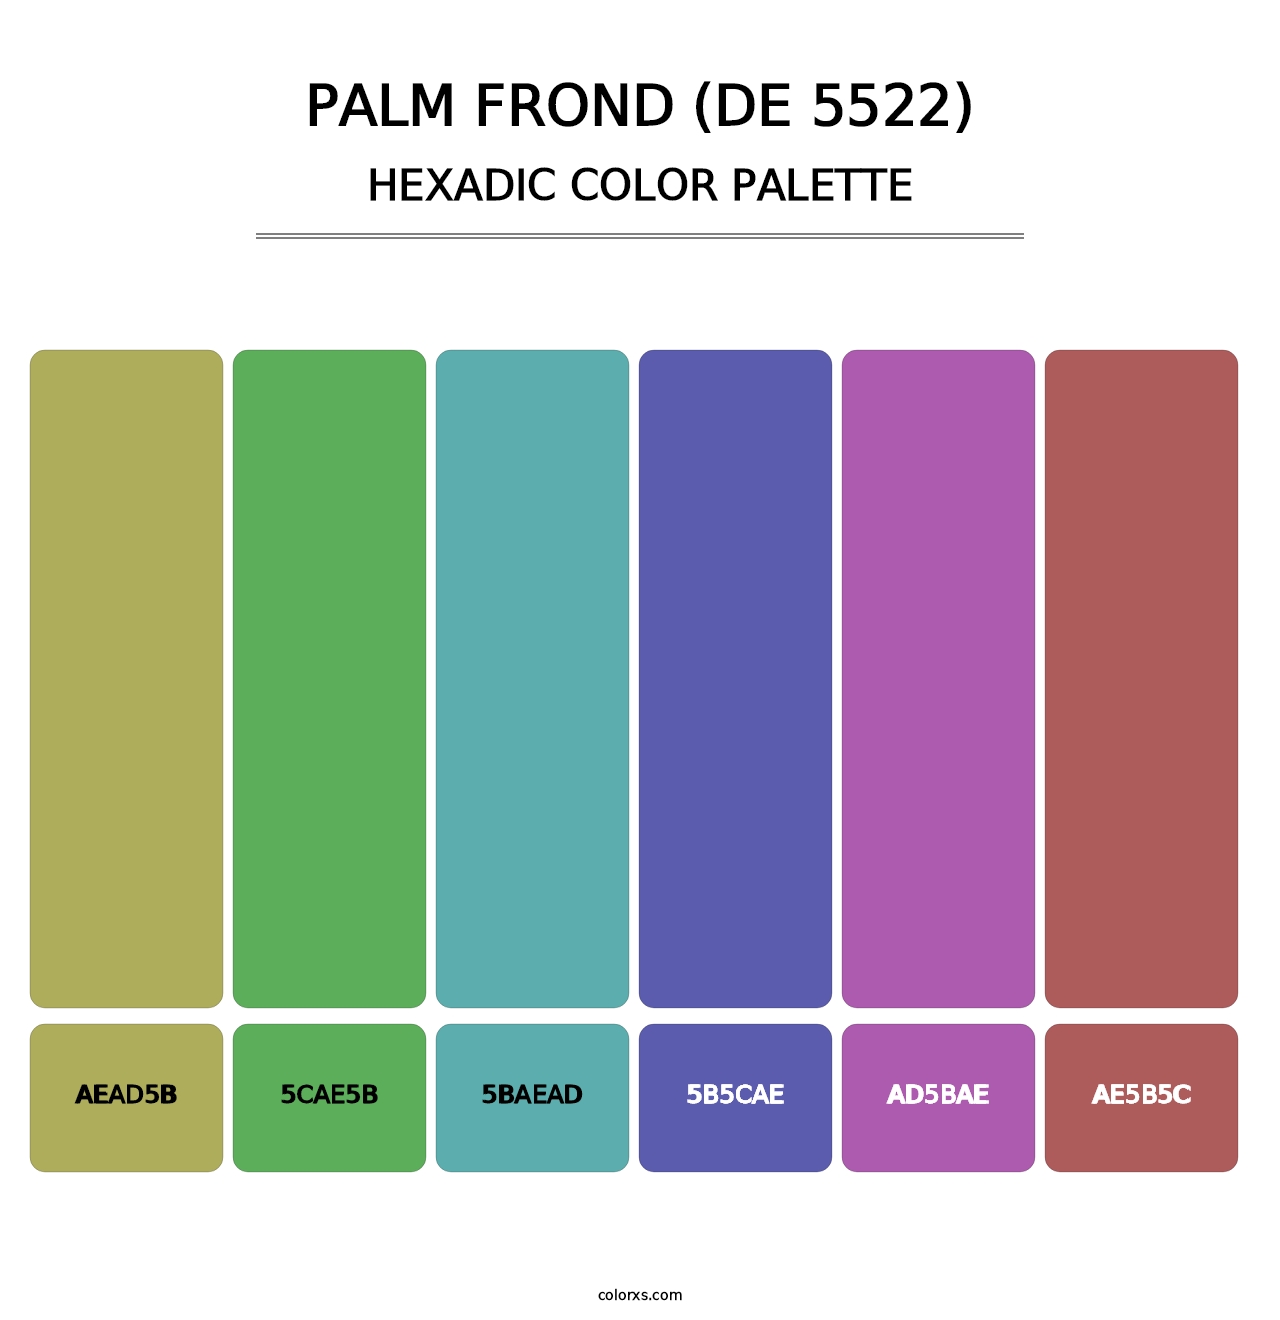 Palm Frond (DE 5522) - Hexadic Color Palette